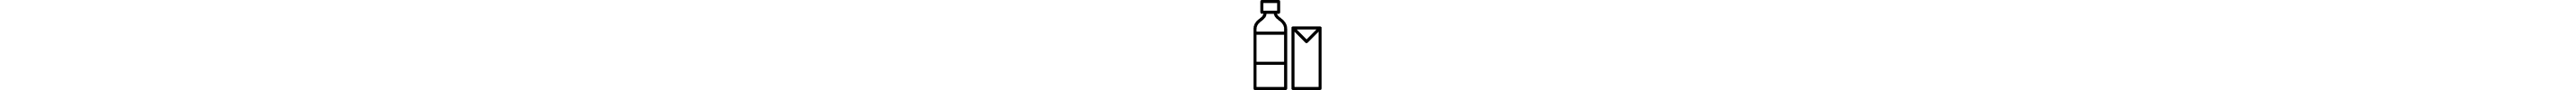 瓶子和纸箱图标